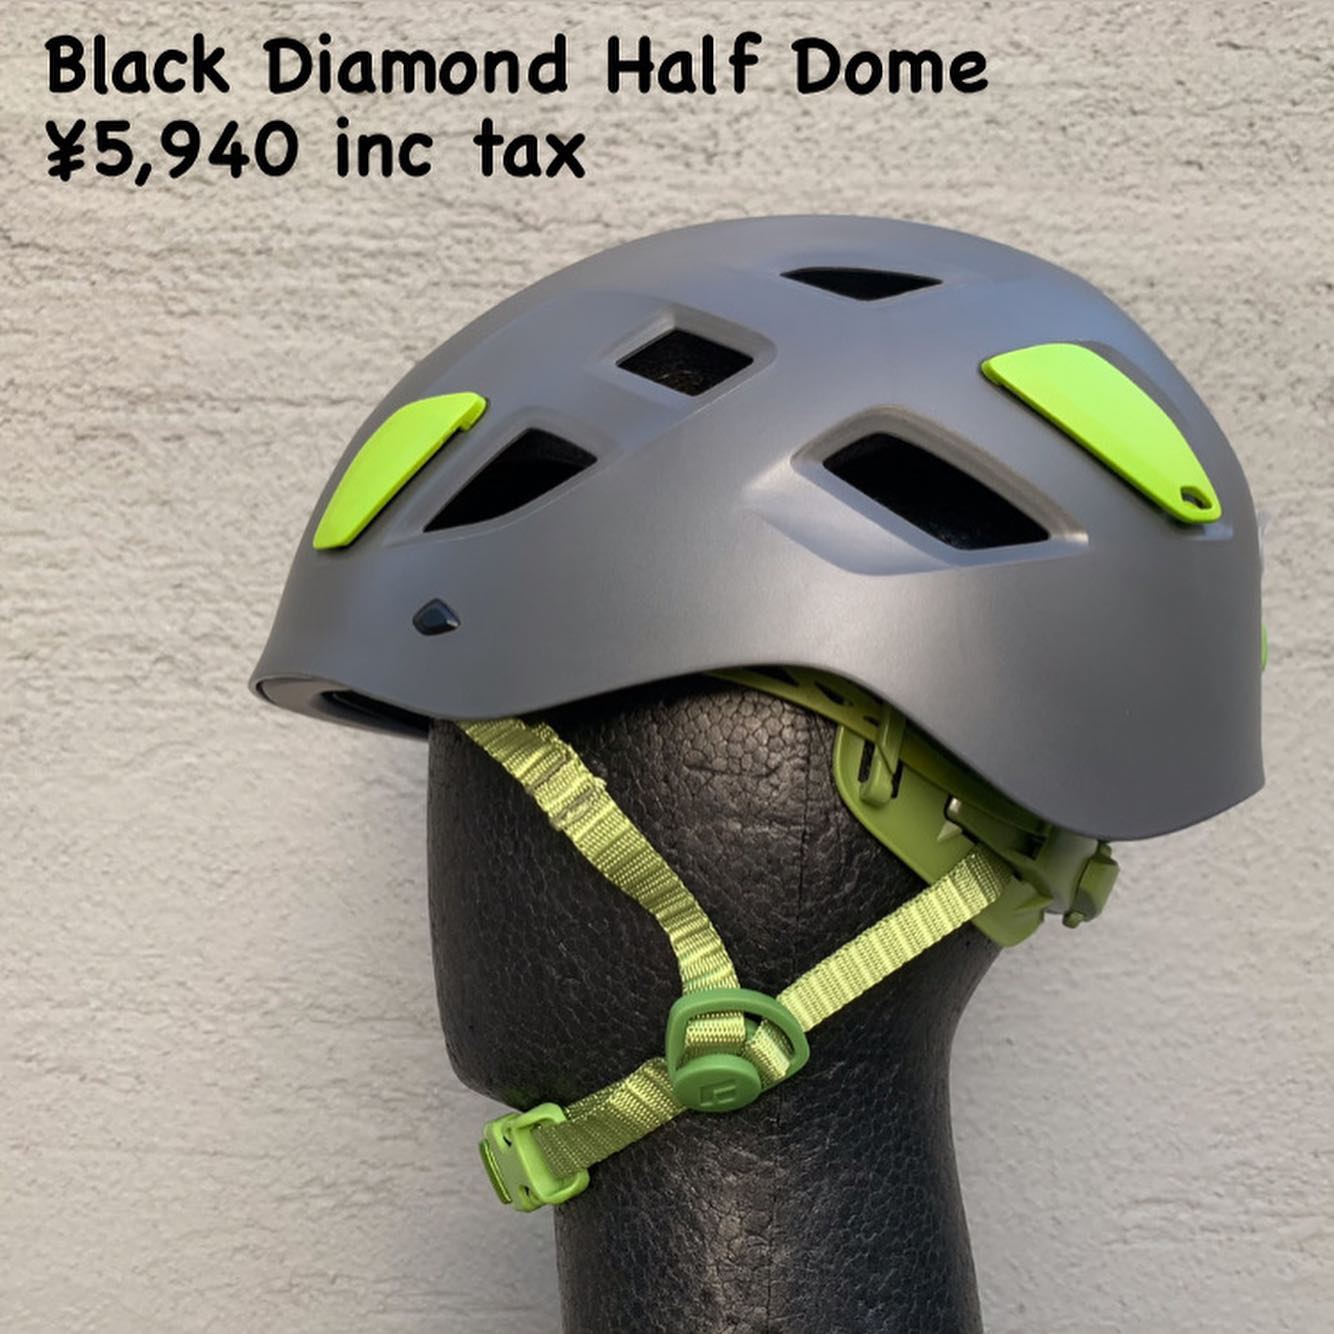 装着感、保護性能、コストパフォーマンスの三拍子揃った定番モデル『Black Diamond ハーフドーム』のご紹介